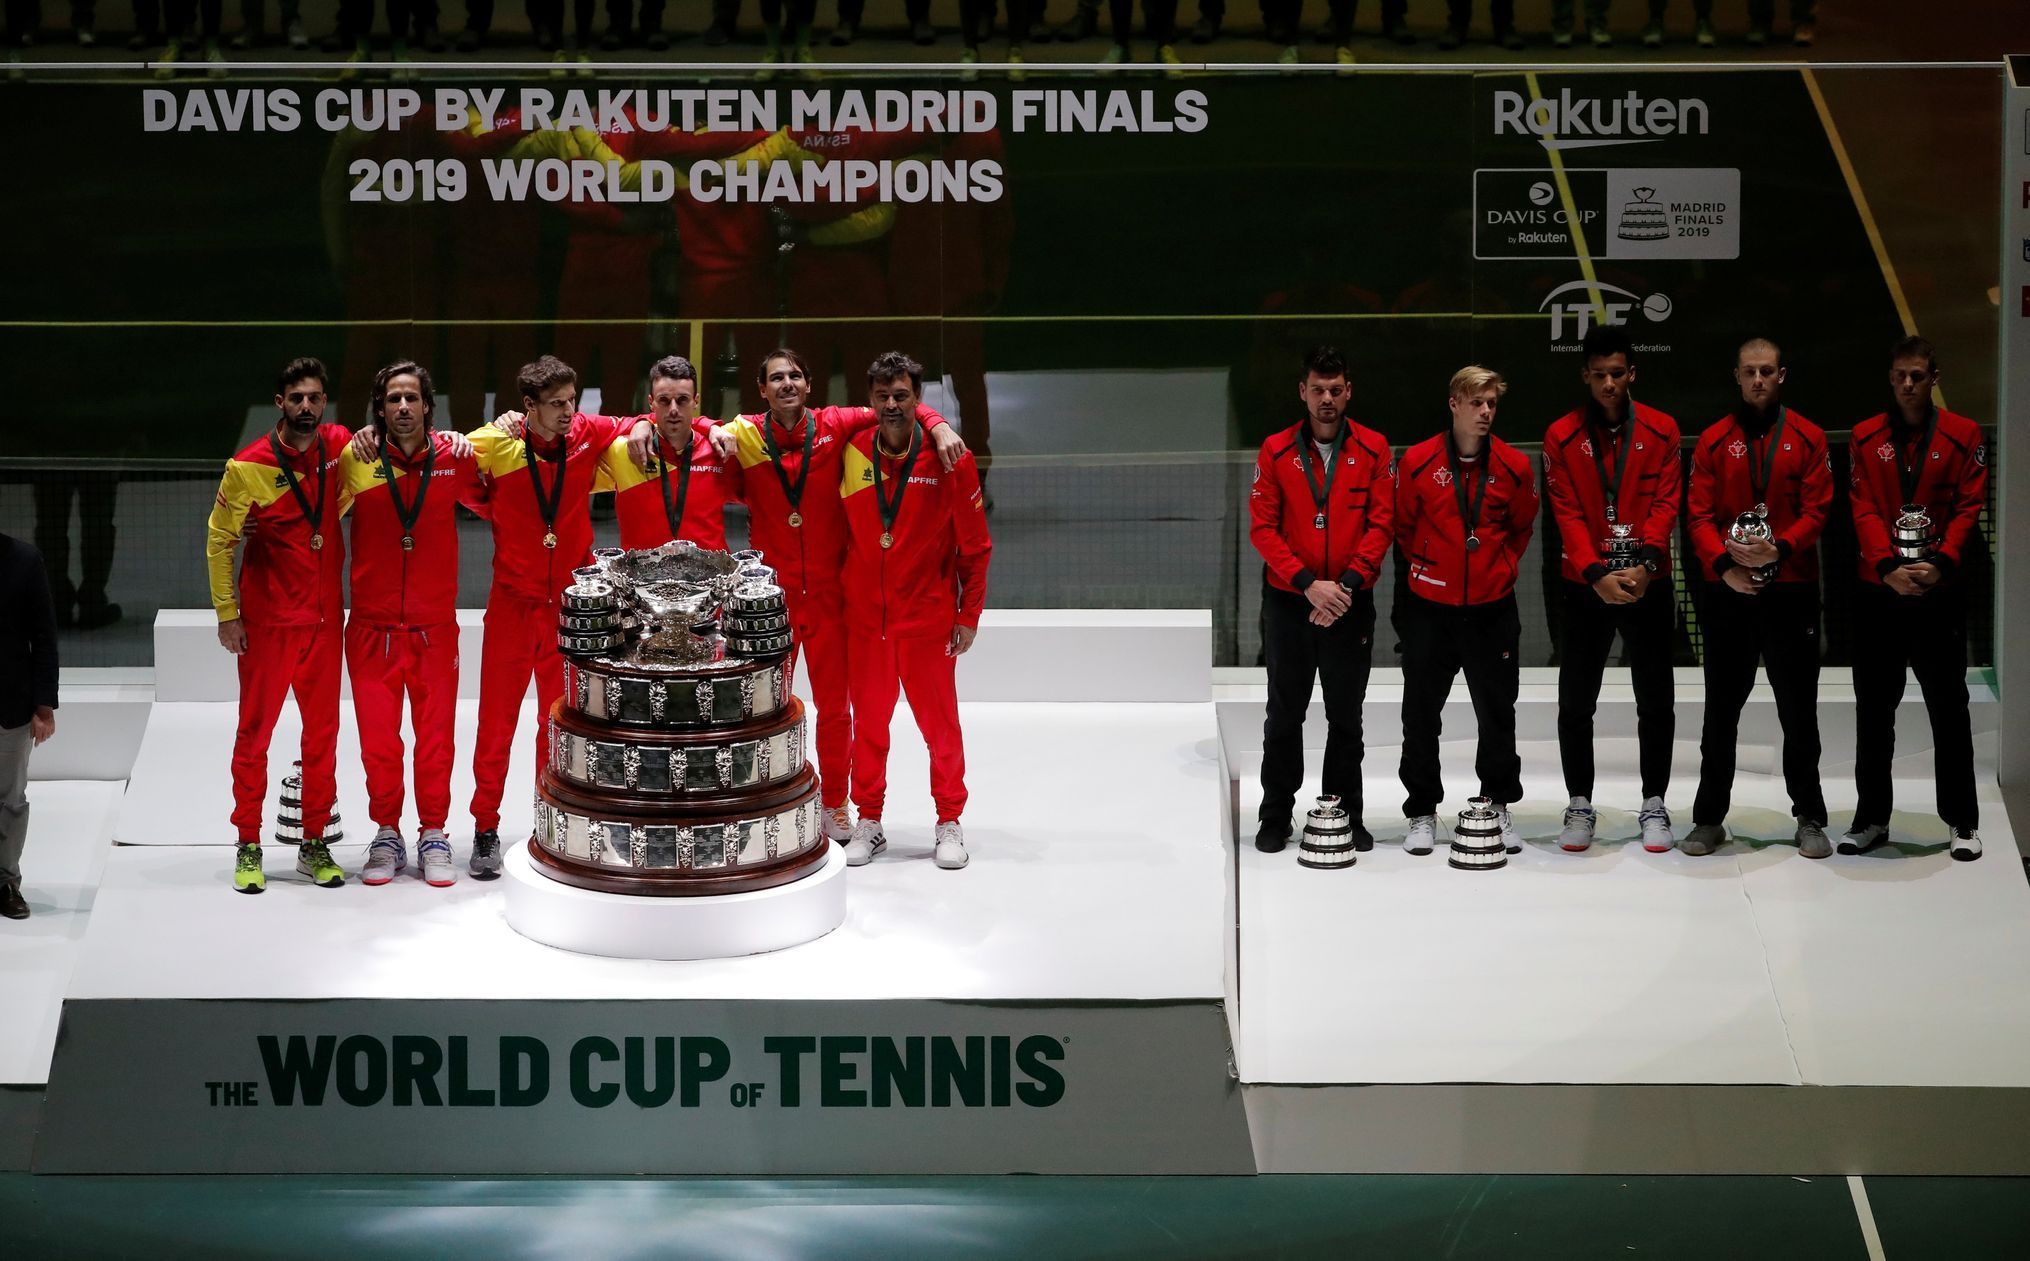 Davis Cup Finals - Final